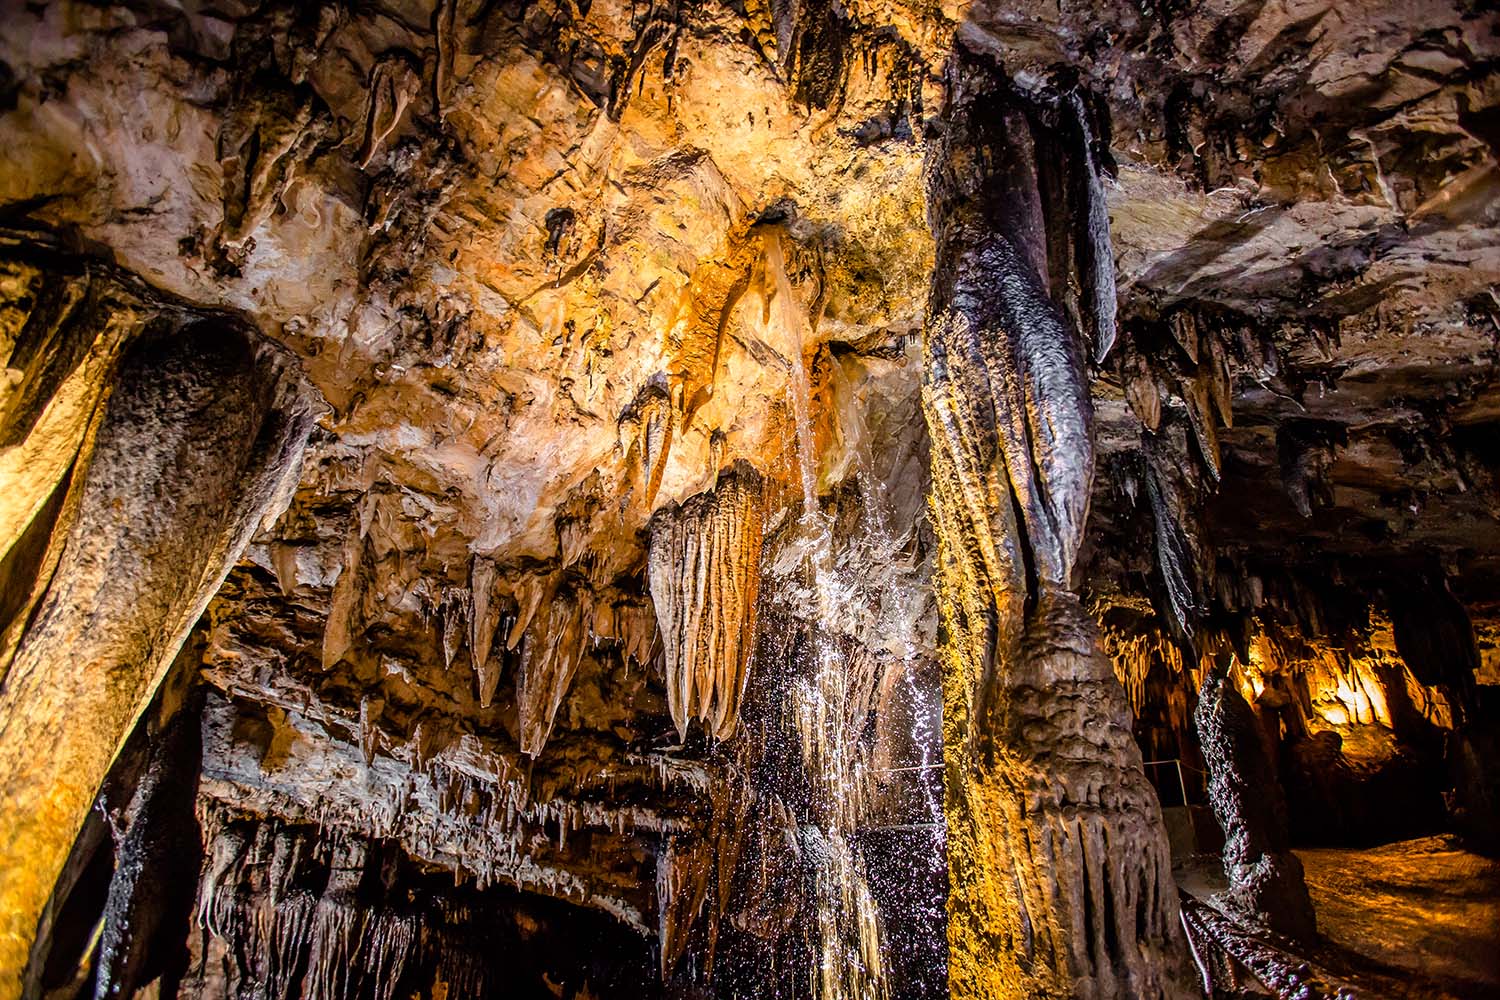 Formations at DeSoto Caverns